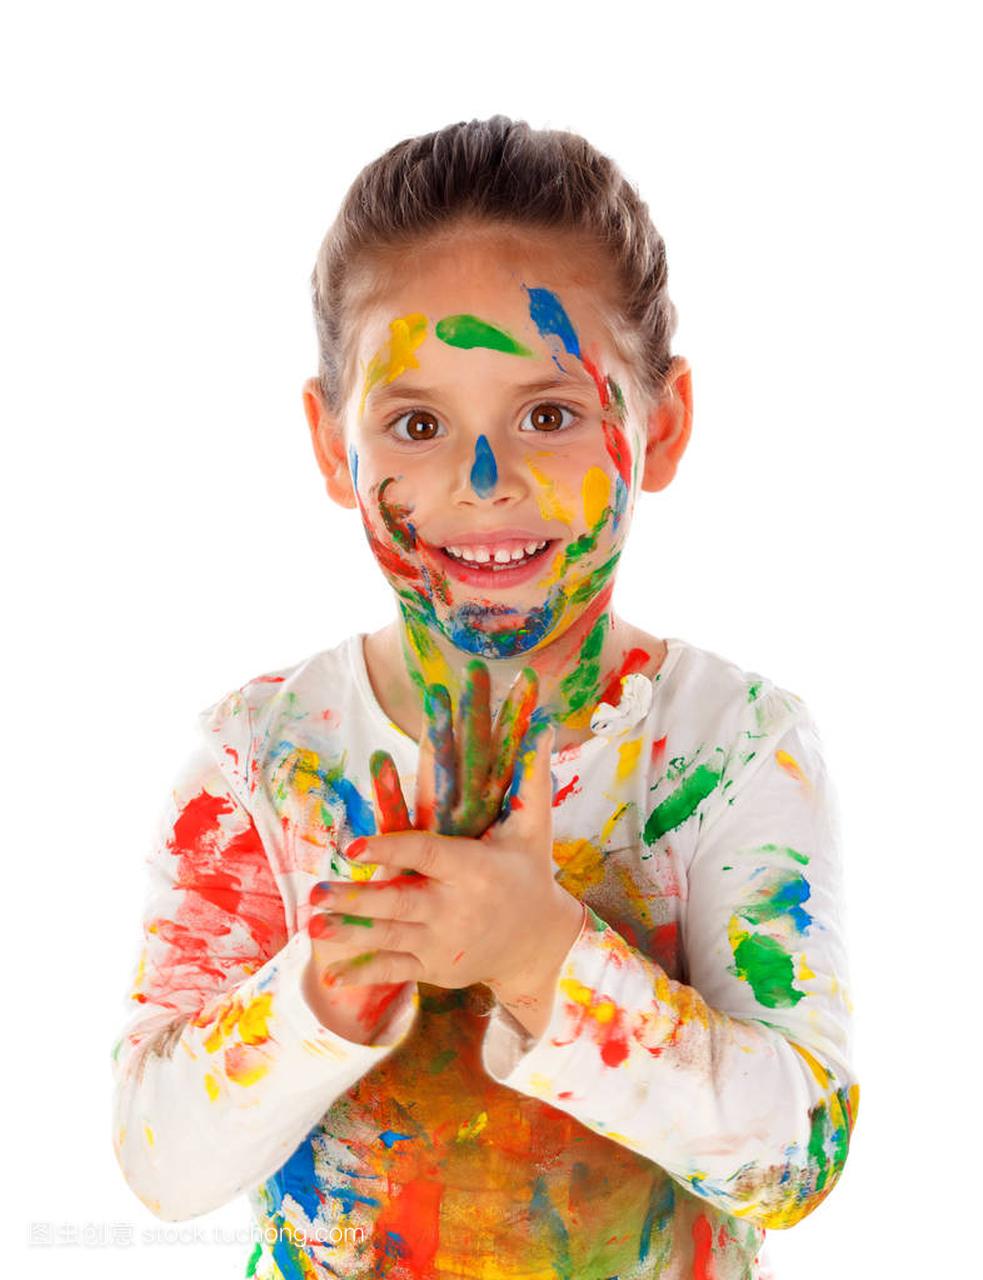 滑稽的女孩用手和脸覆盖在白色背景上的油漆隔